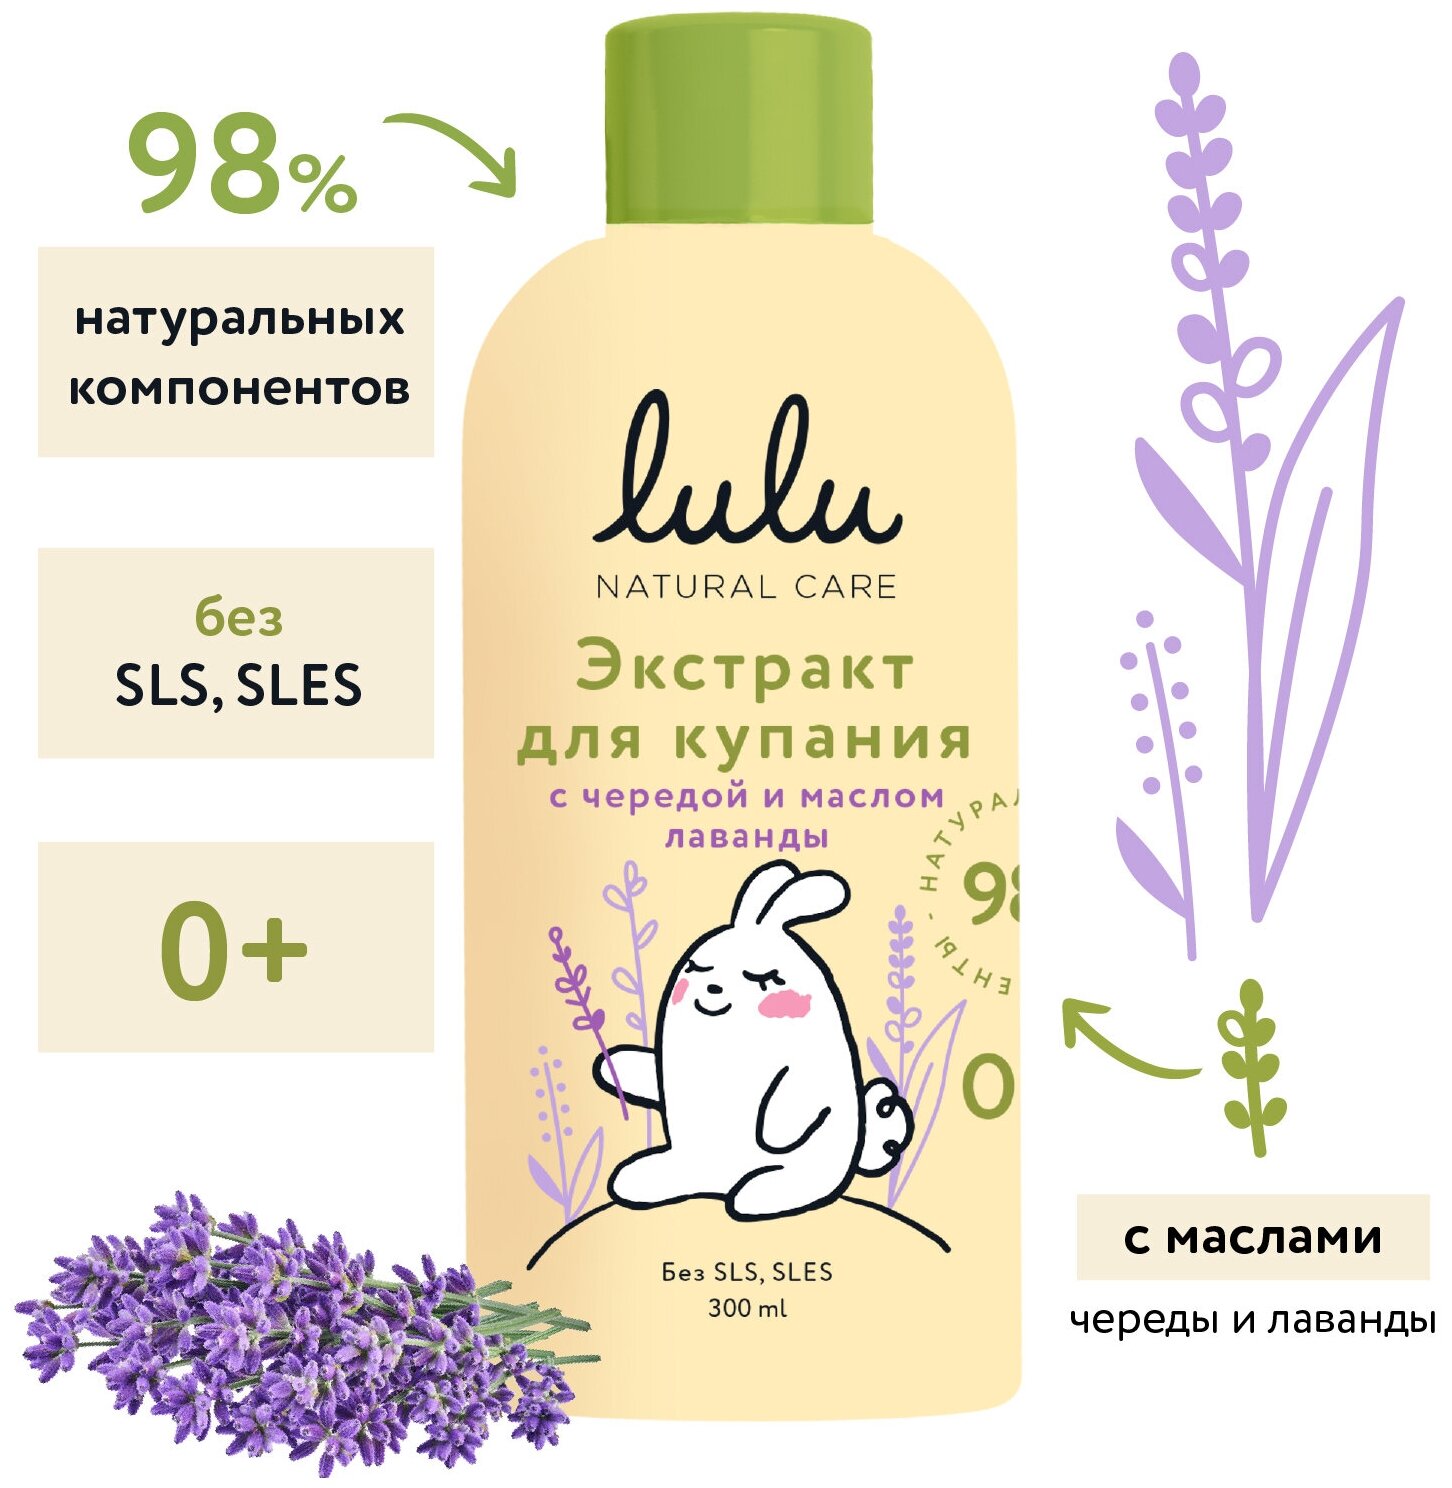 Экстракт для купания малышей с чередой и маслом лаванды LULU 300 мл 0+. Средство концентрат для ванны. Череда для детей новорожденных